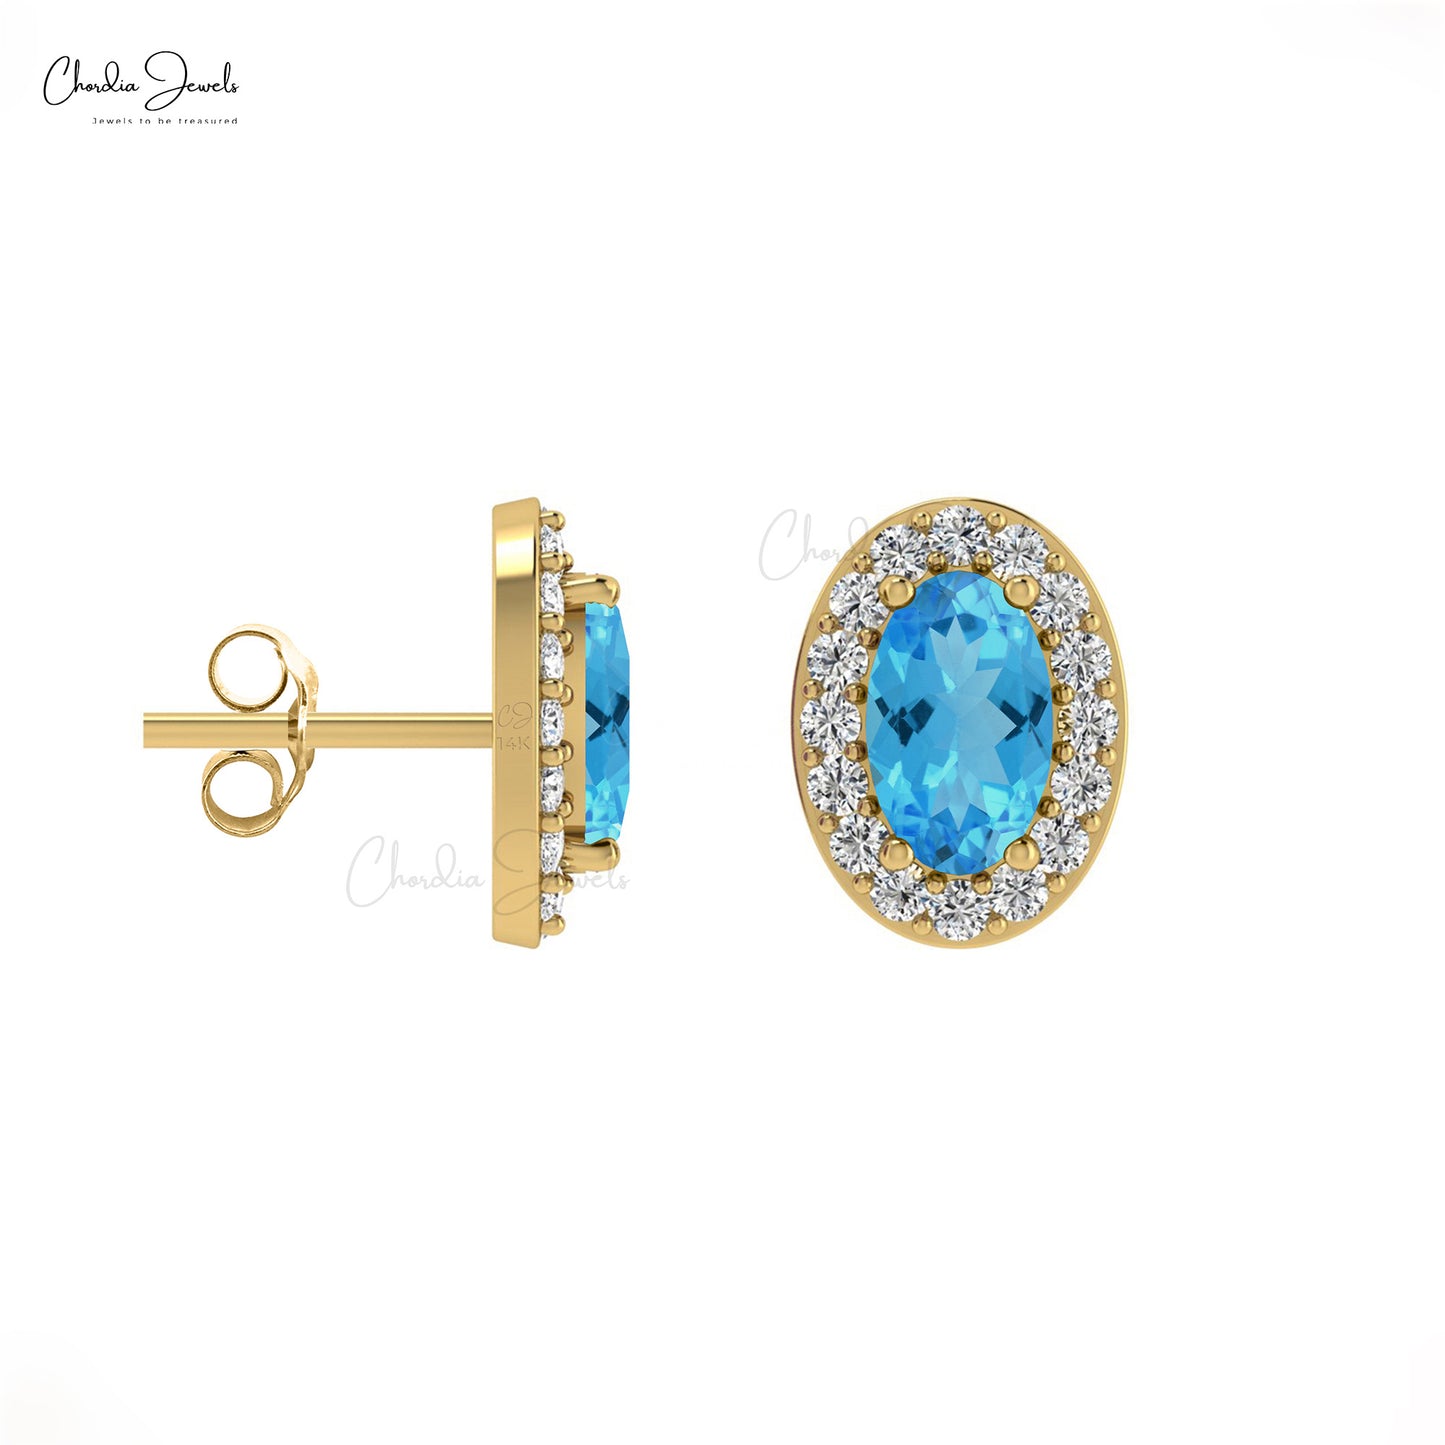 Oval Cut Swiss Blue Topaz & Diamond Halo Earrings in 14K Gold